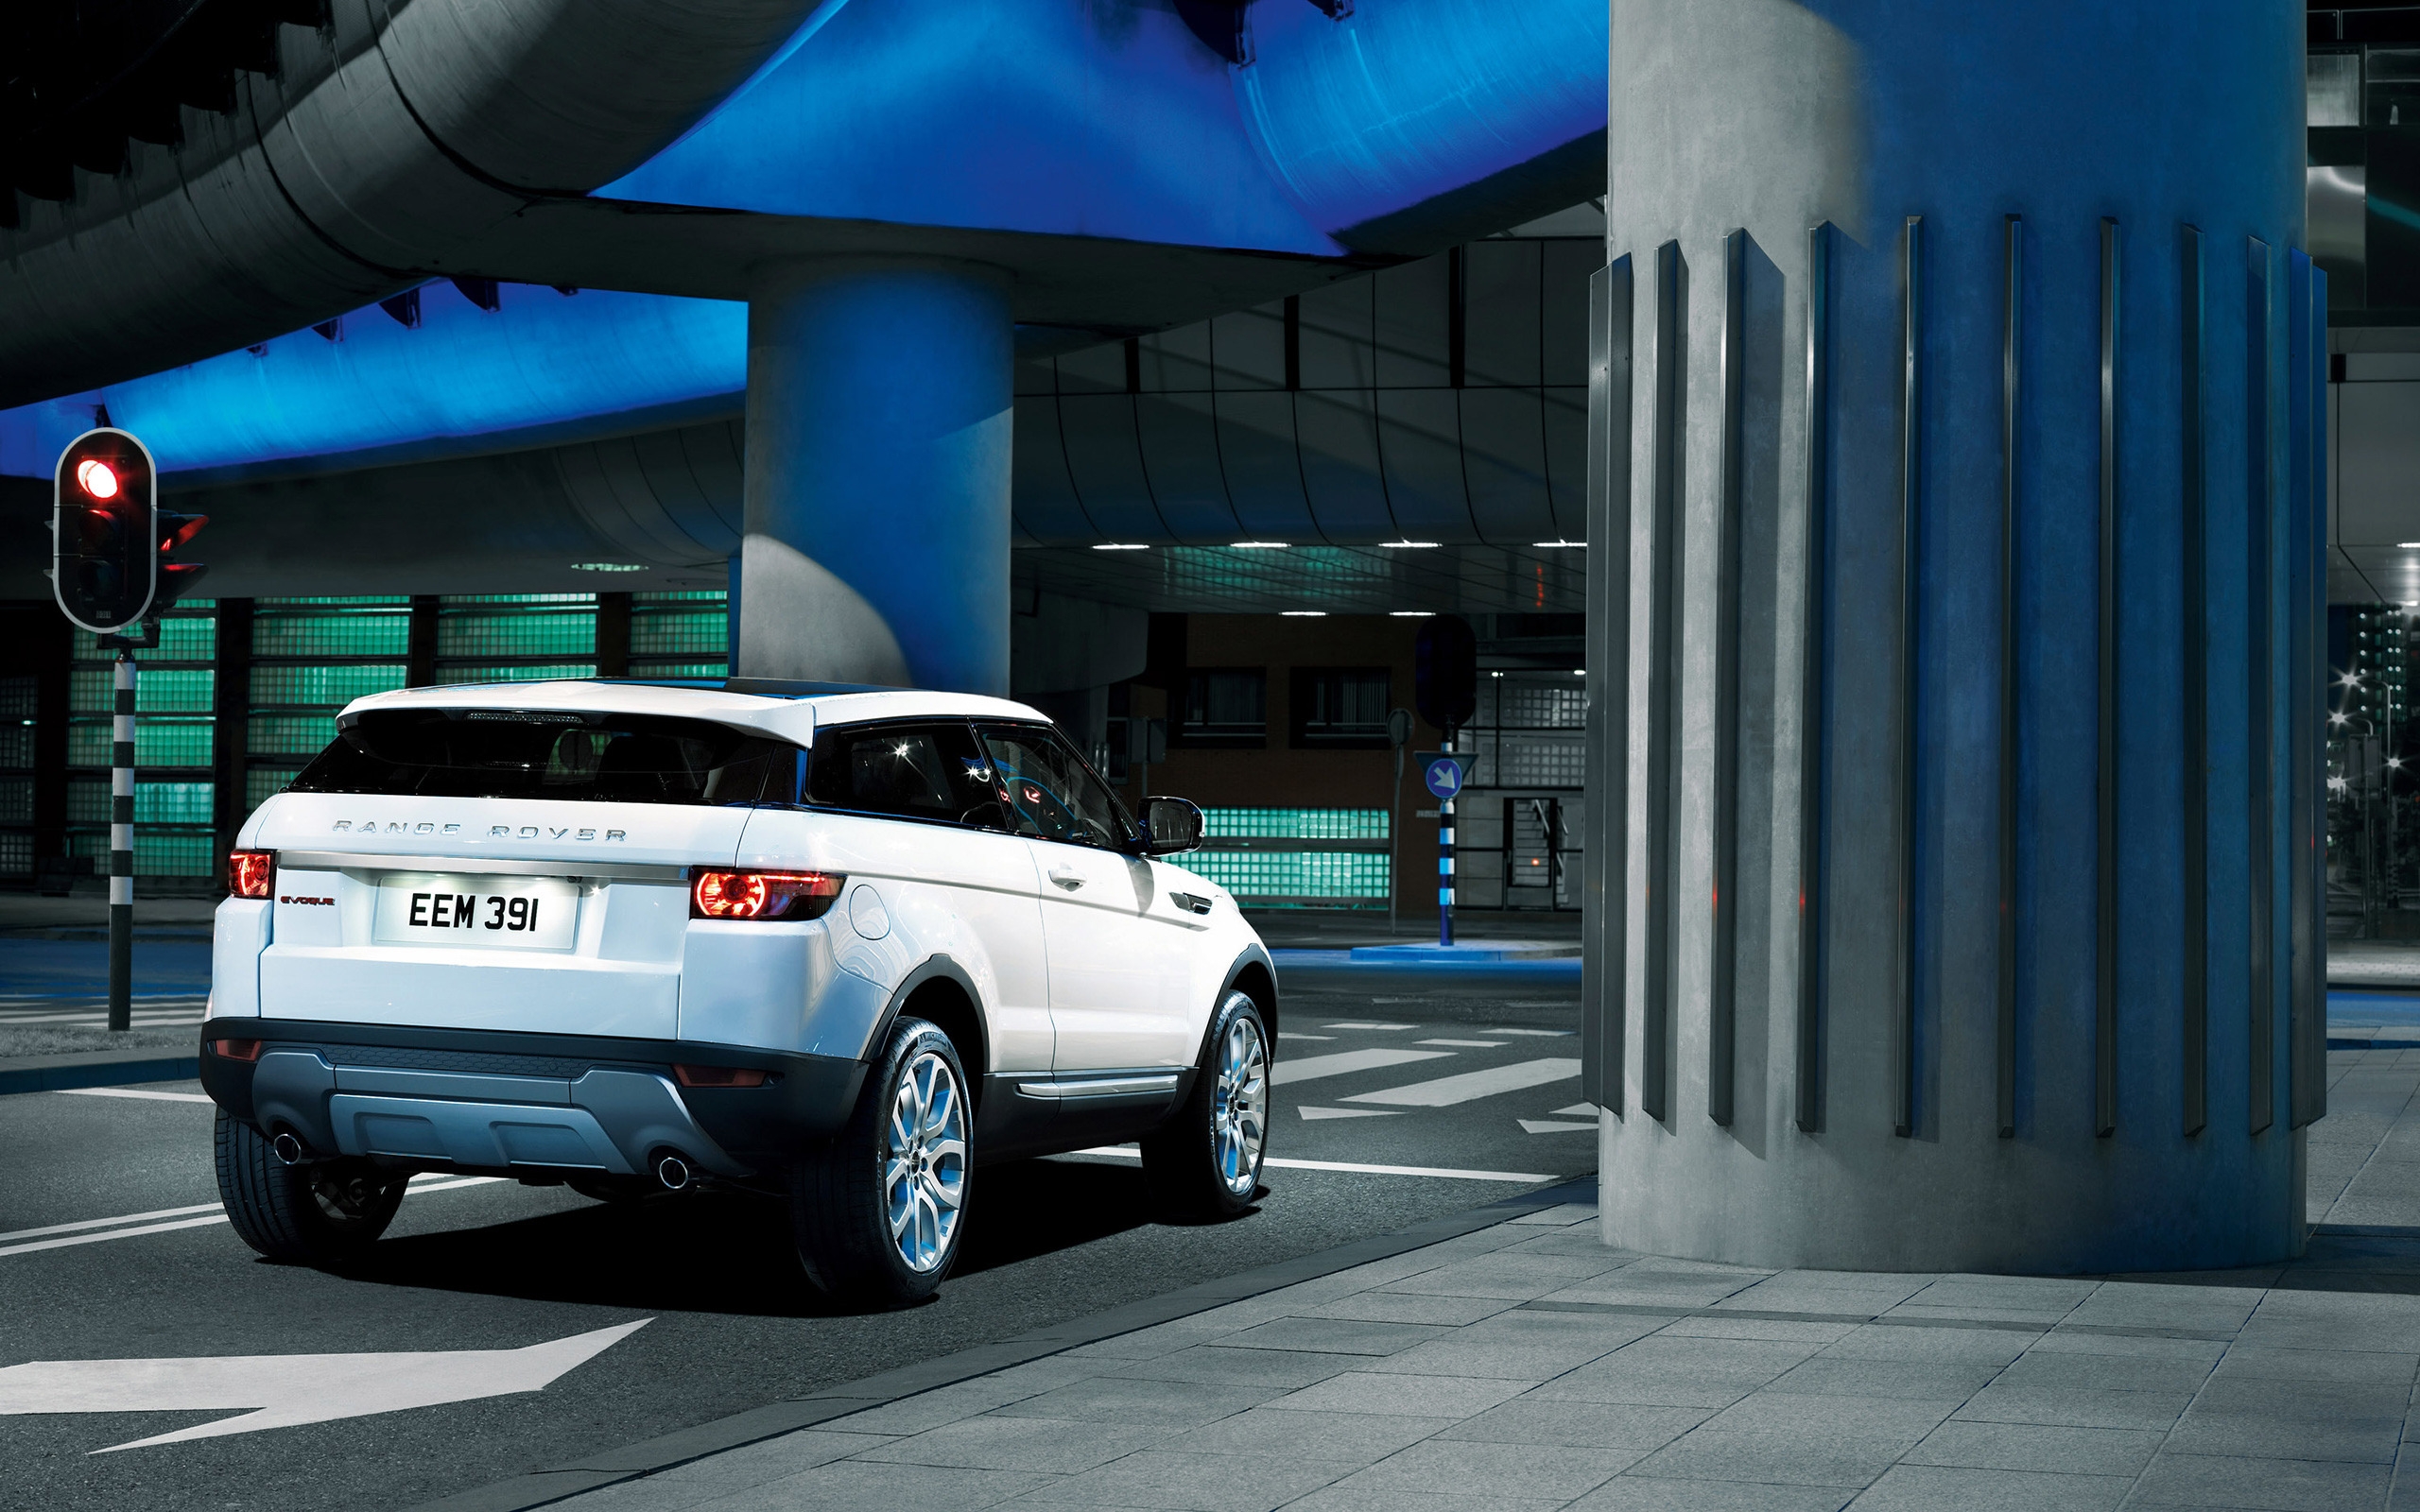 Range Rover Evoque Rear for 2560 x 1600 widescreen resolution